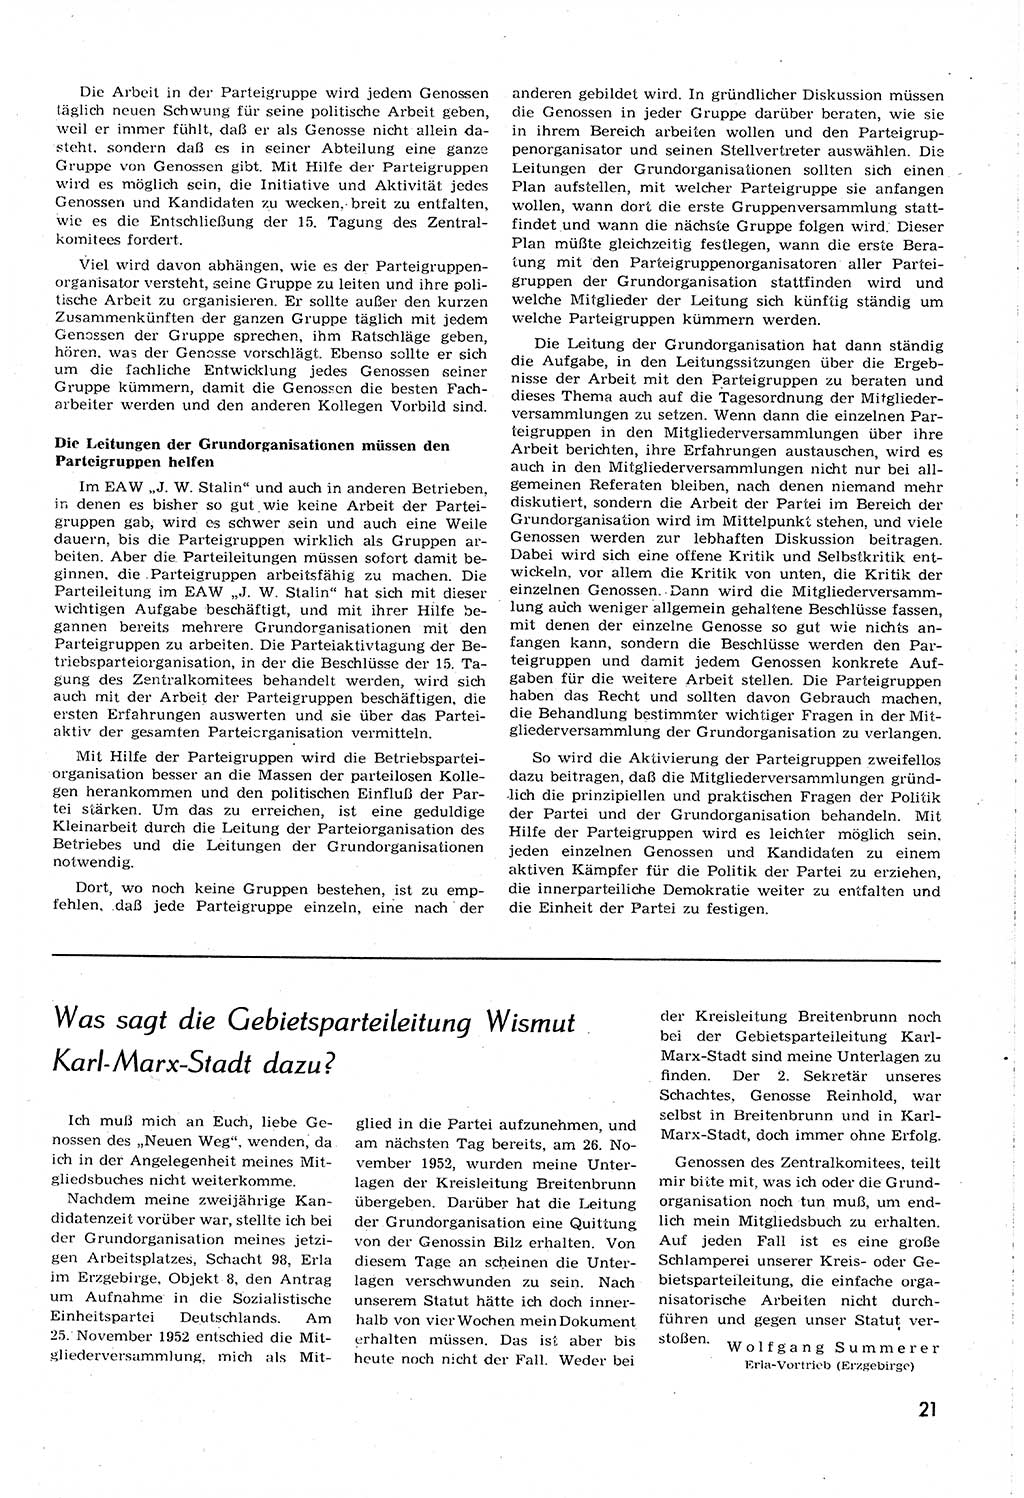 Neuer Weg (NW), Organ des Zentralkomitees (ZK) [Sozialistische Einheitspartei Deutschlands (SED)] für alle Parteiarbeiter, 8. Jahrgang [Deutsche Demokratische Republik (DDR)] 1953, Heft 14/21 (NW ZK SED DDR 1953, H. 14/21)